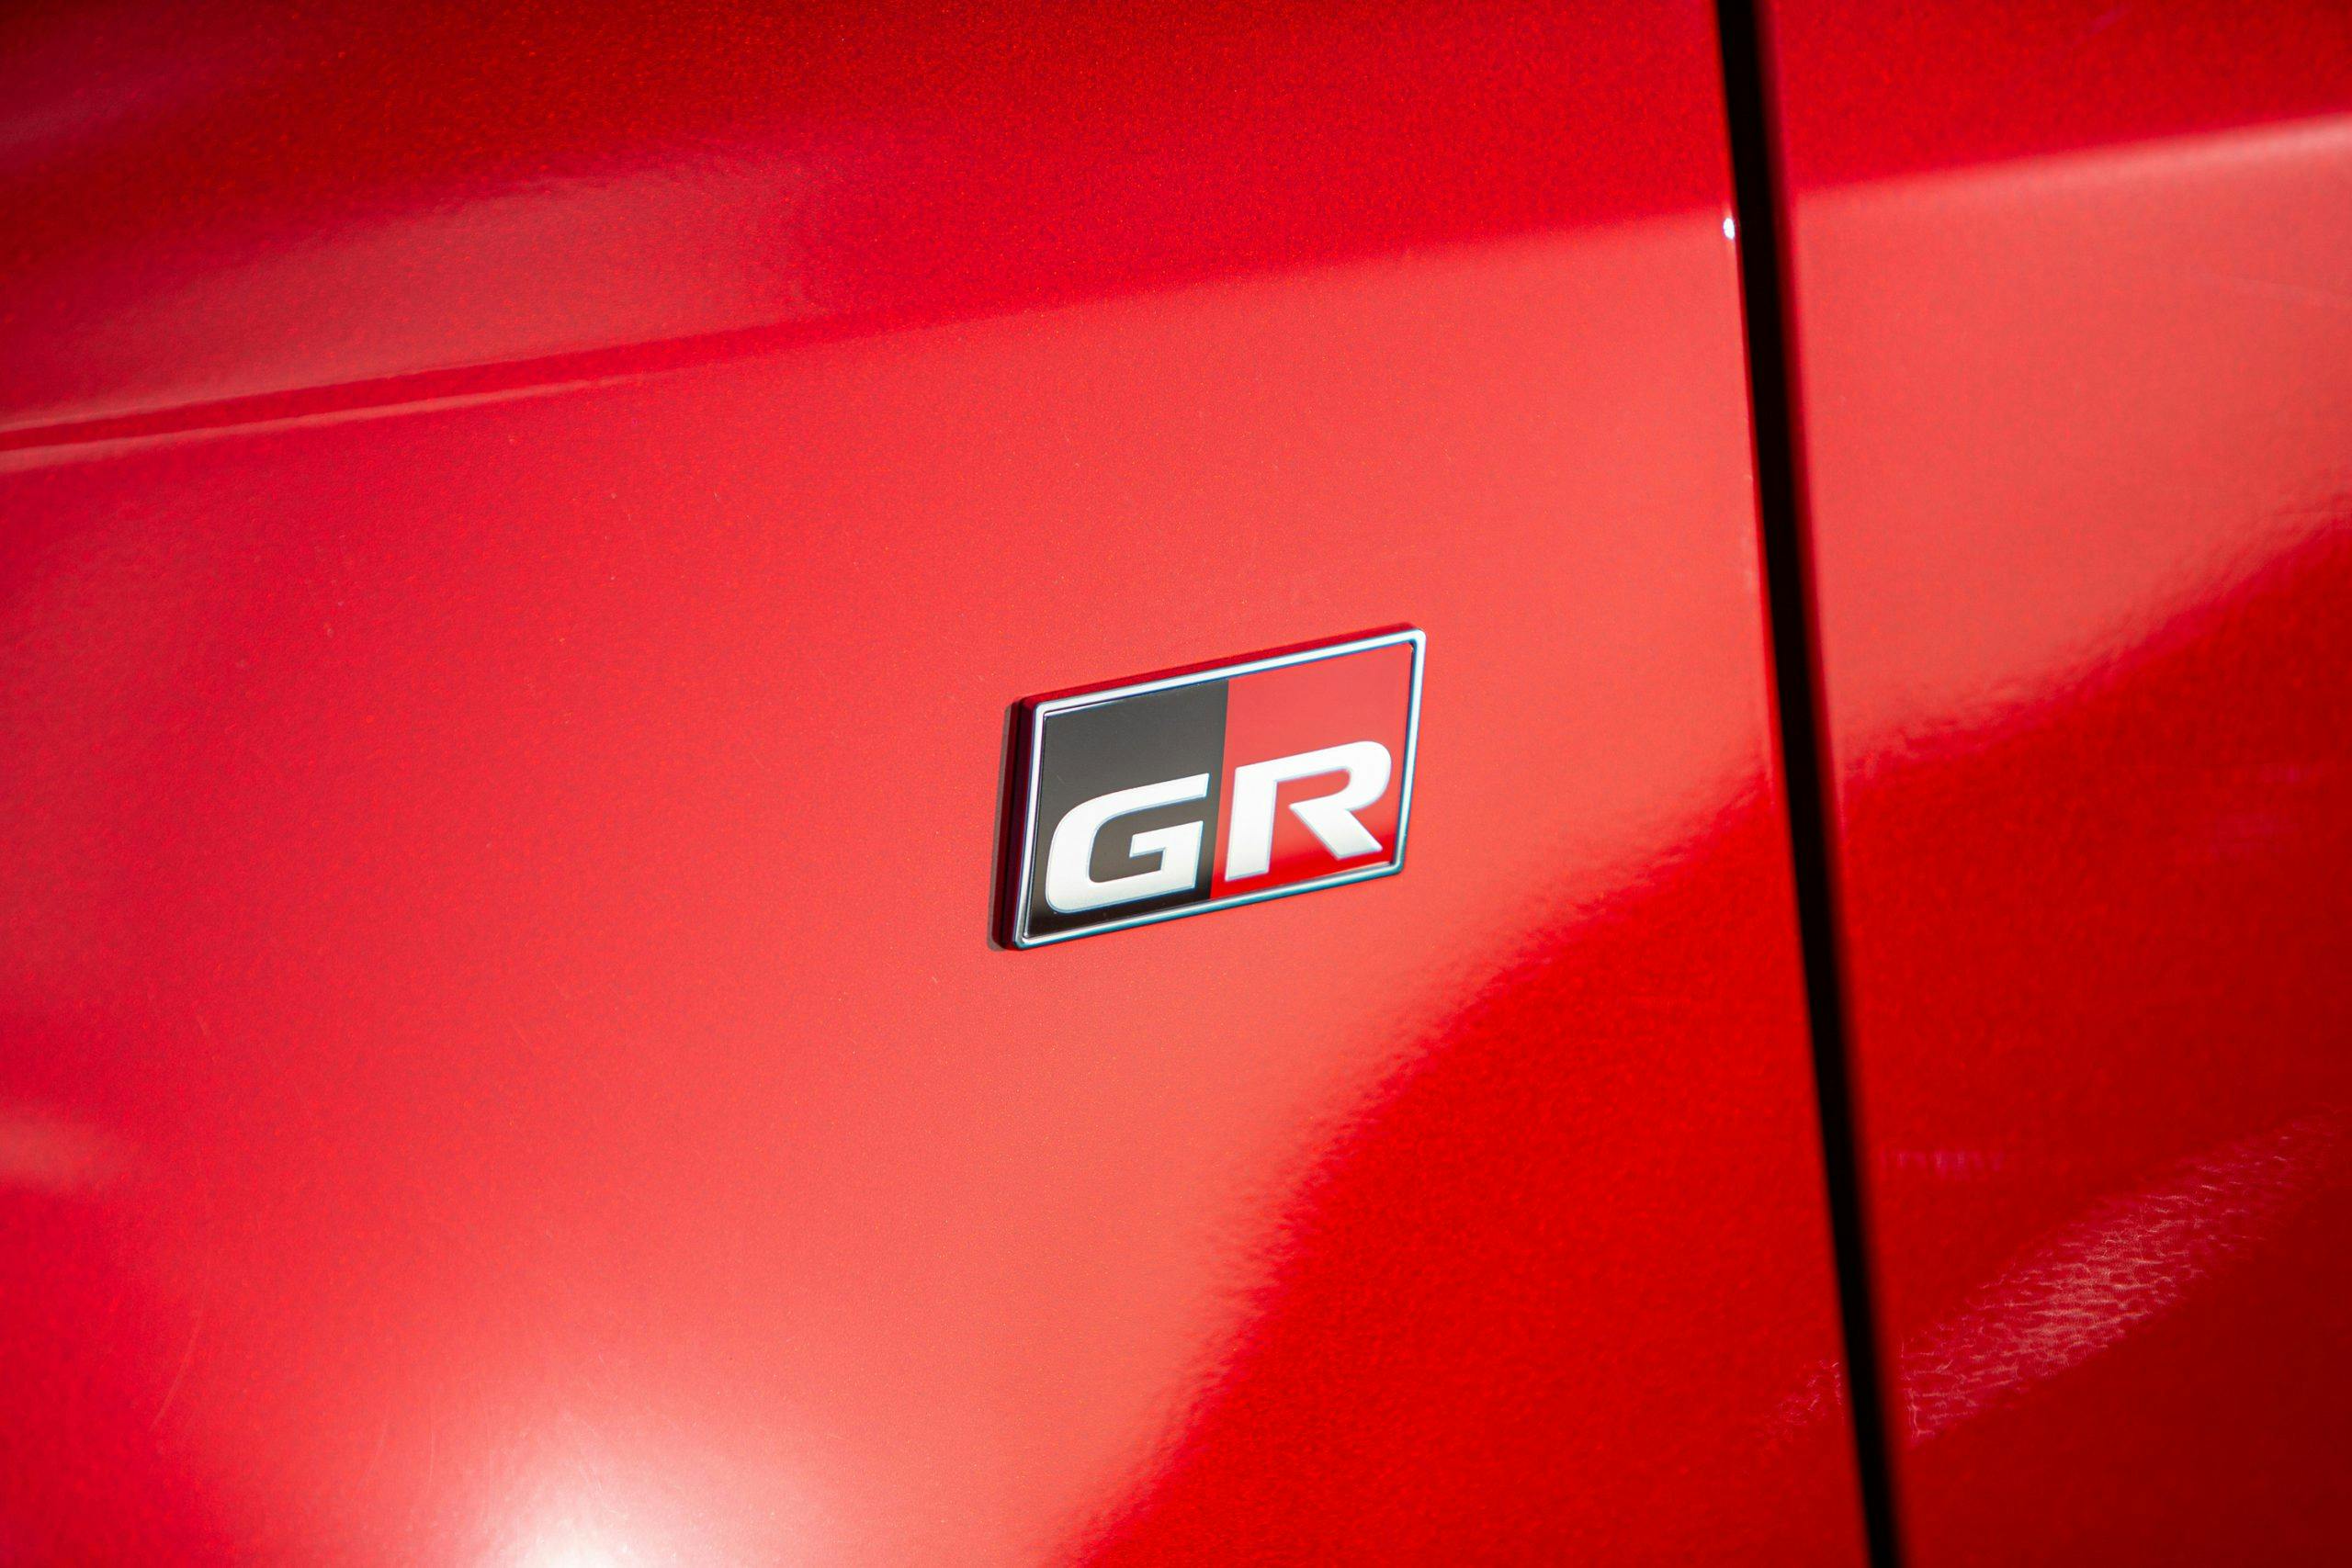 GR Toyota Yaris side panel logo badge detail